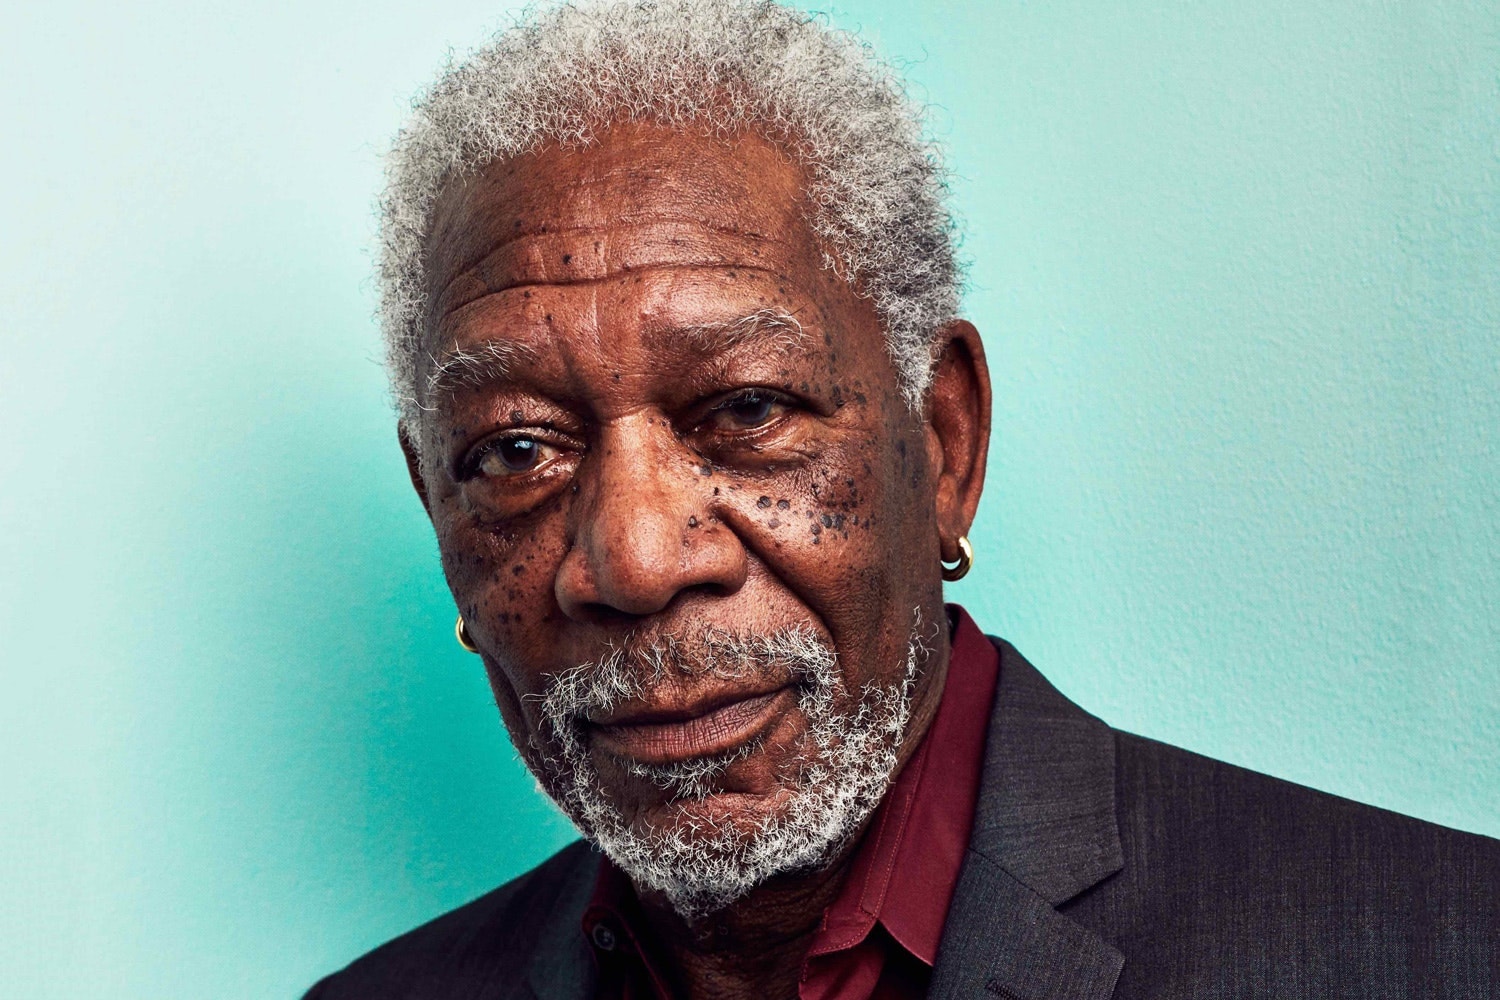 老牌影帝 Morgan Freeman 遭到多名女性指控性騷擾